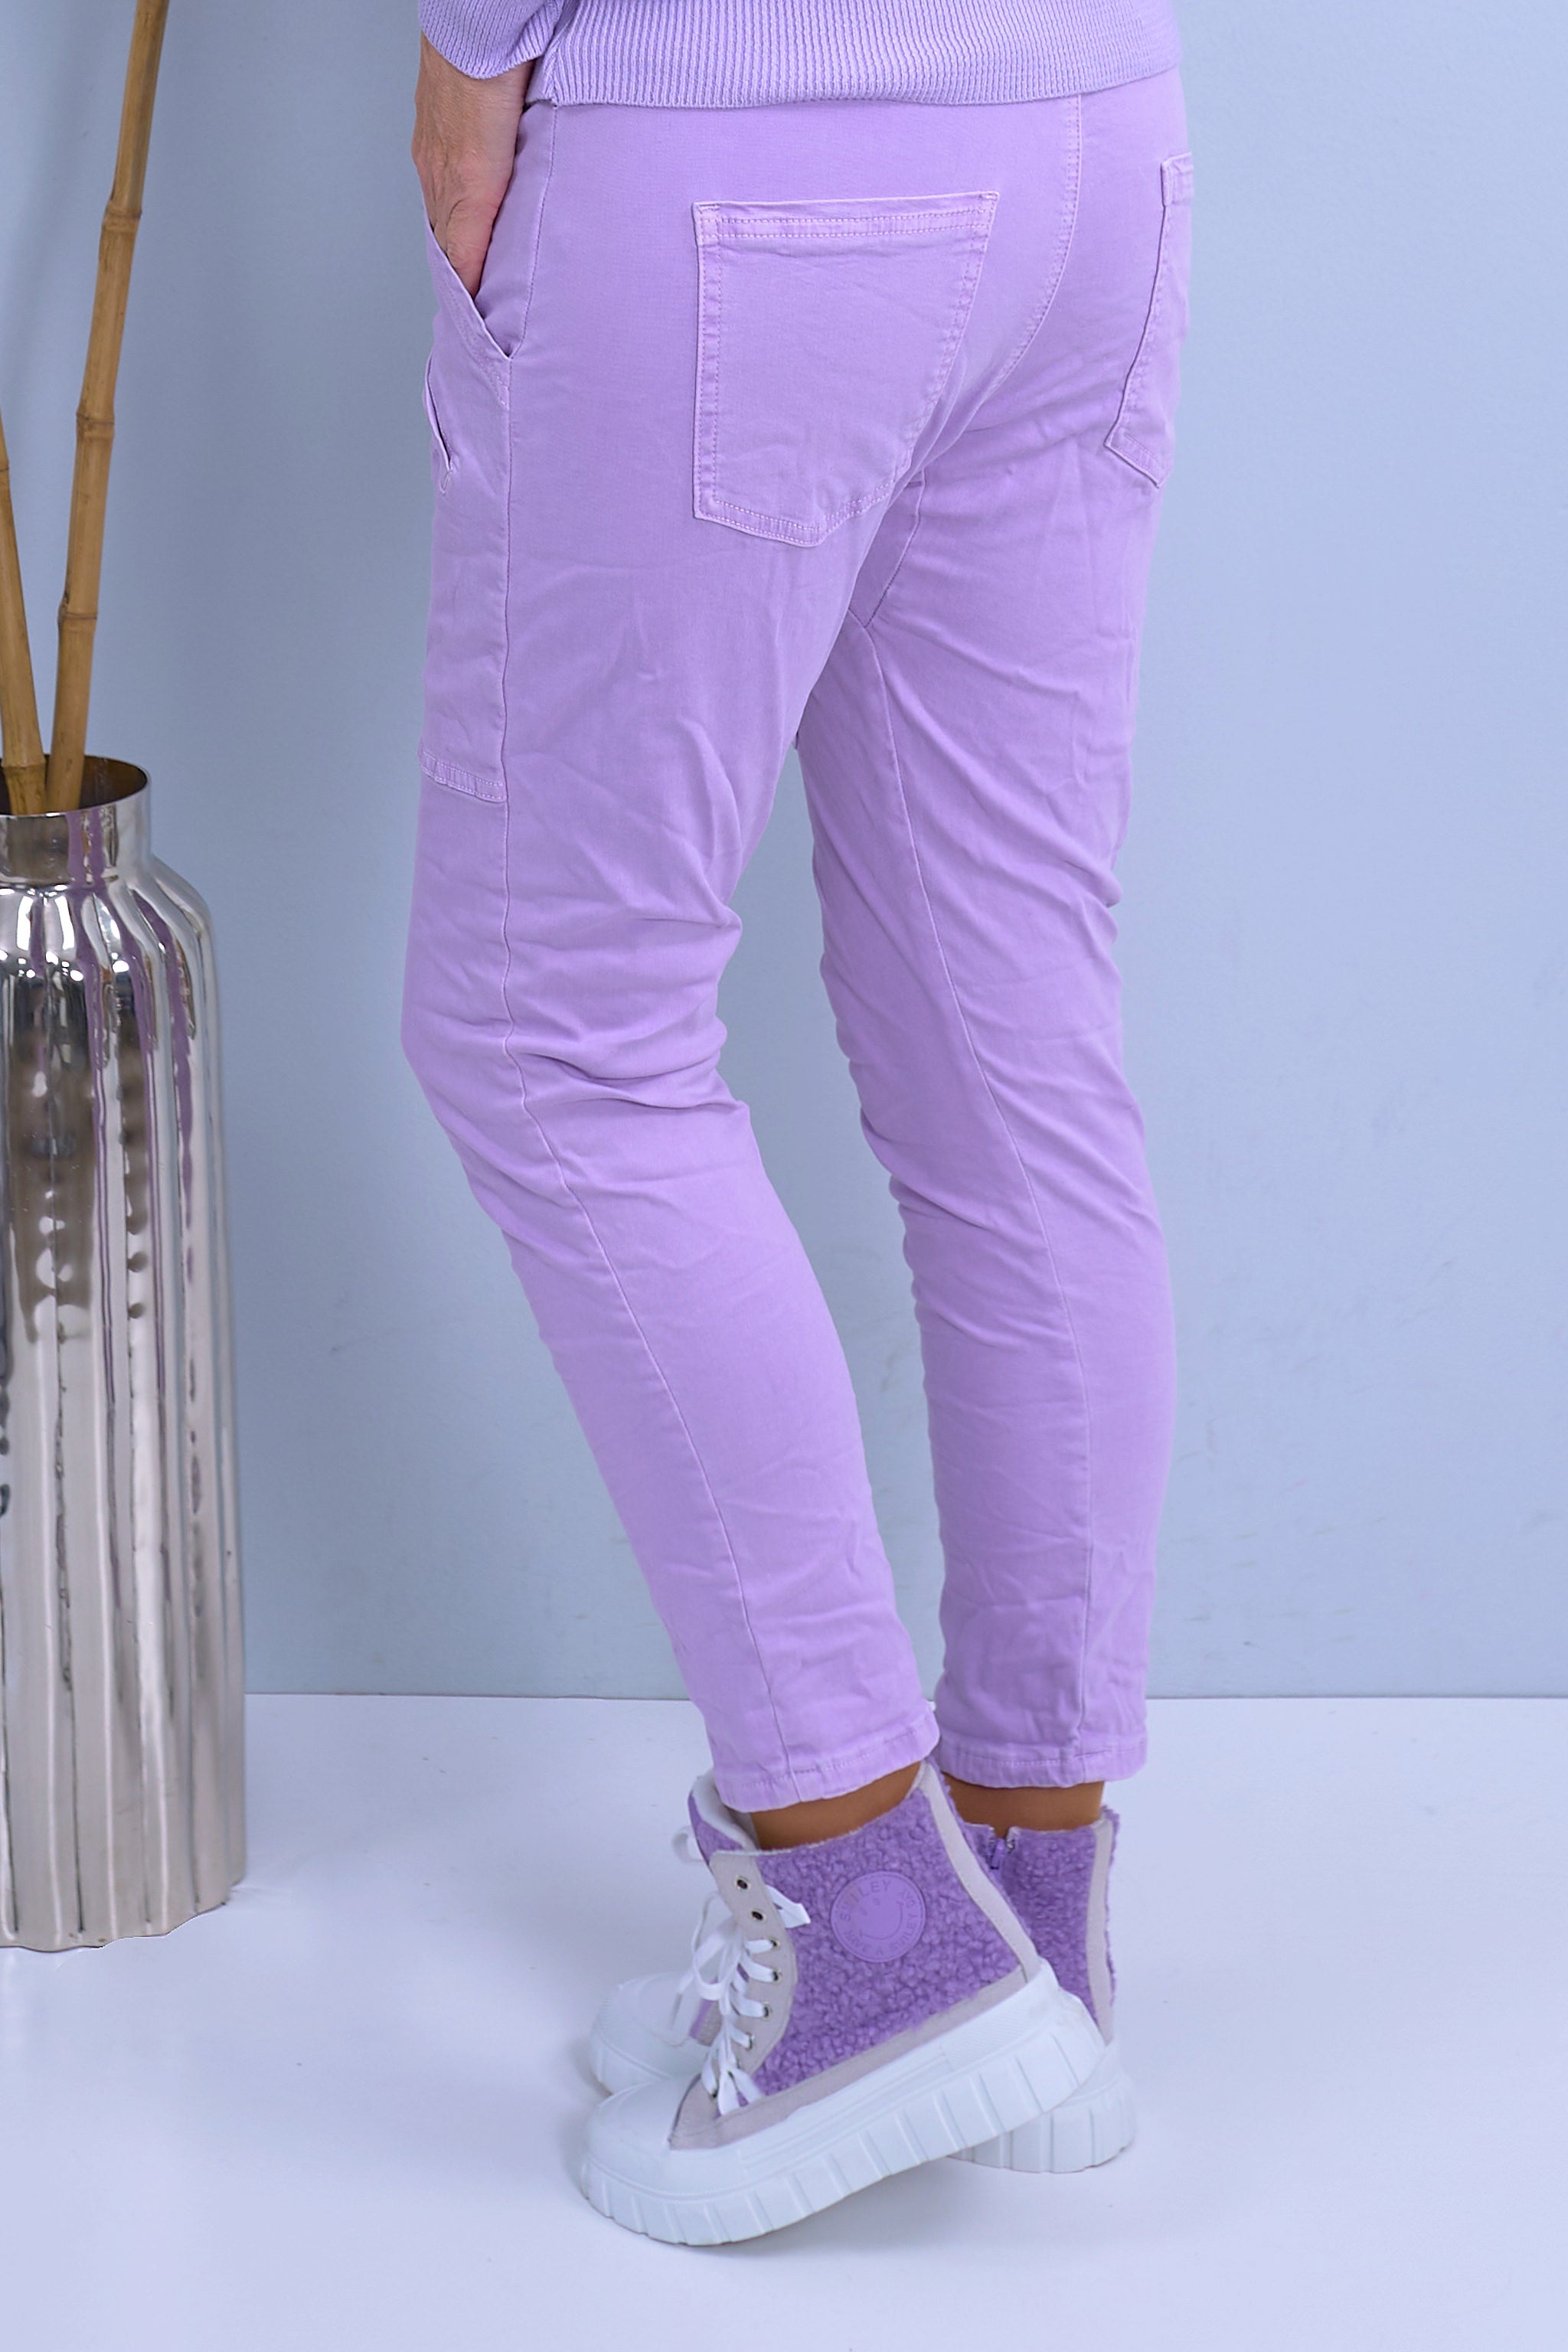 Jeans-Stretch-Hose mit aufgesetzten Taschen, flieder